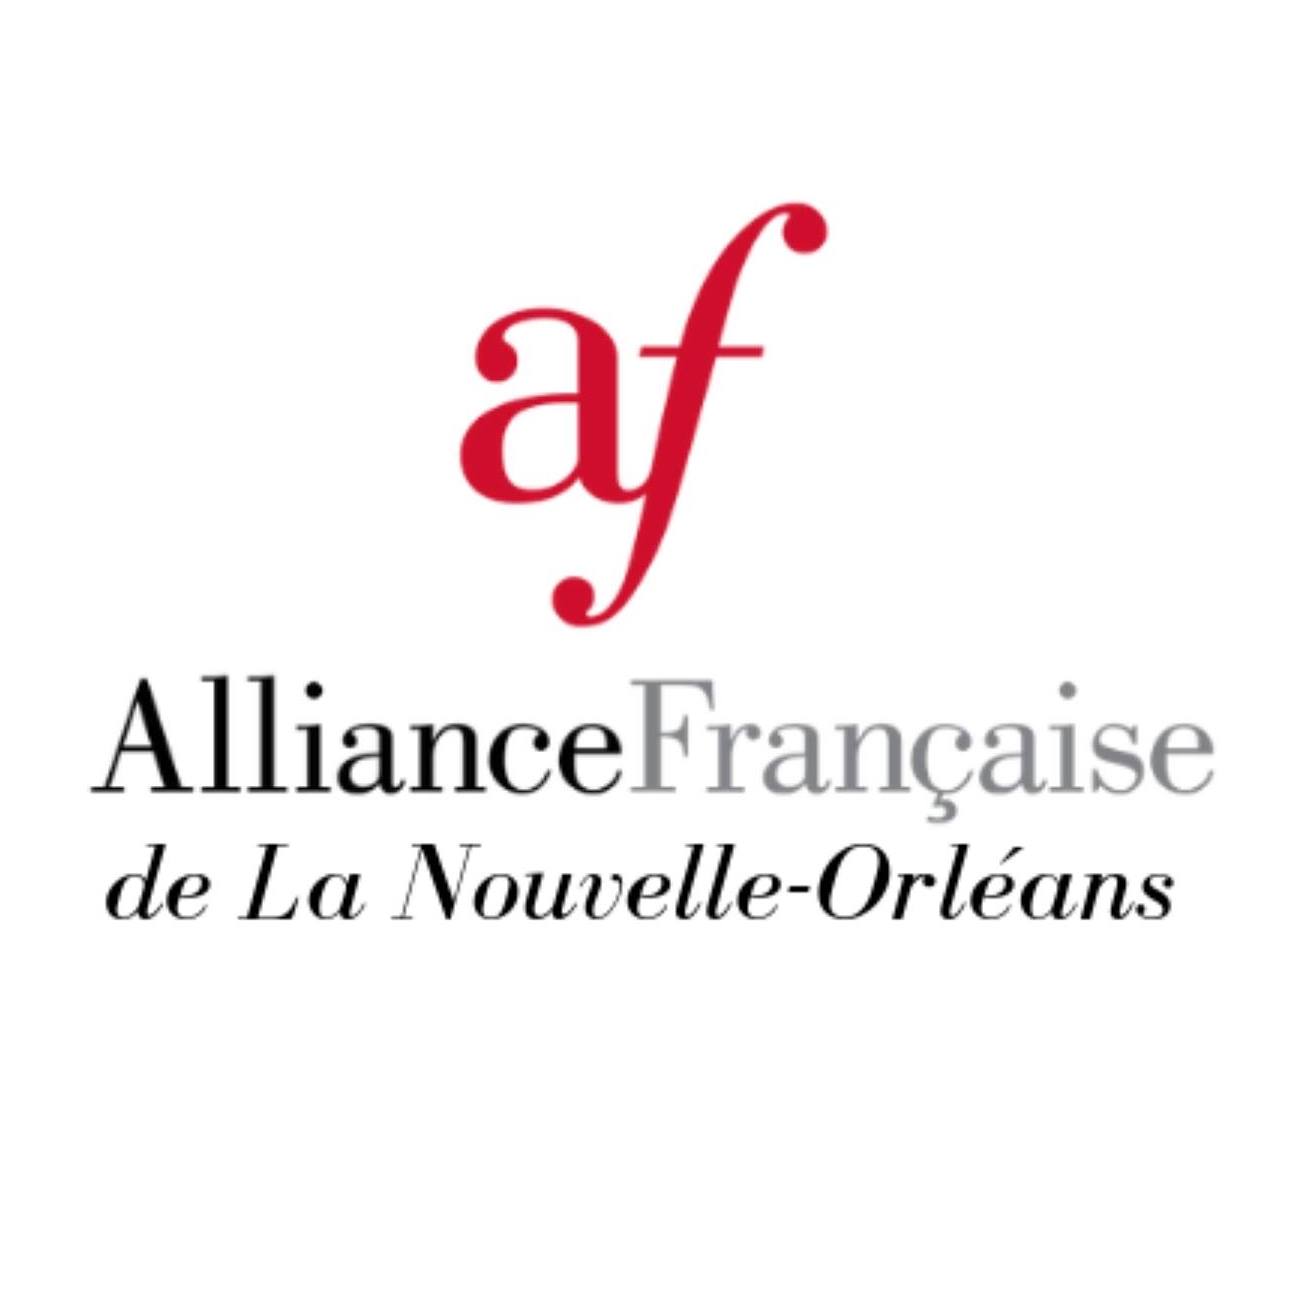 French Organization in New Orleans Louisiana - Alliance Francaise de la Nouvelle Orléans